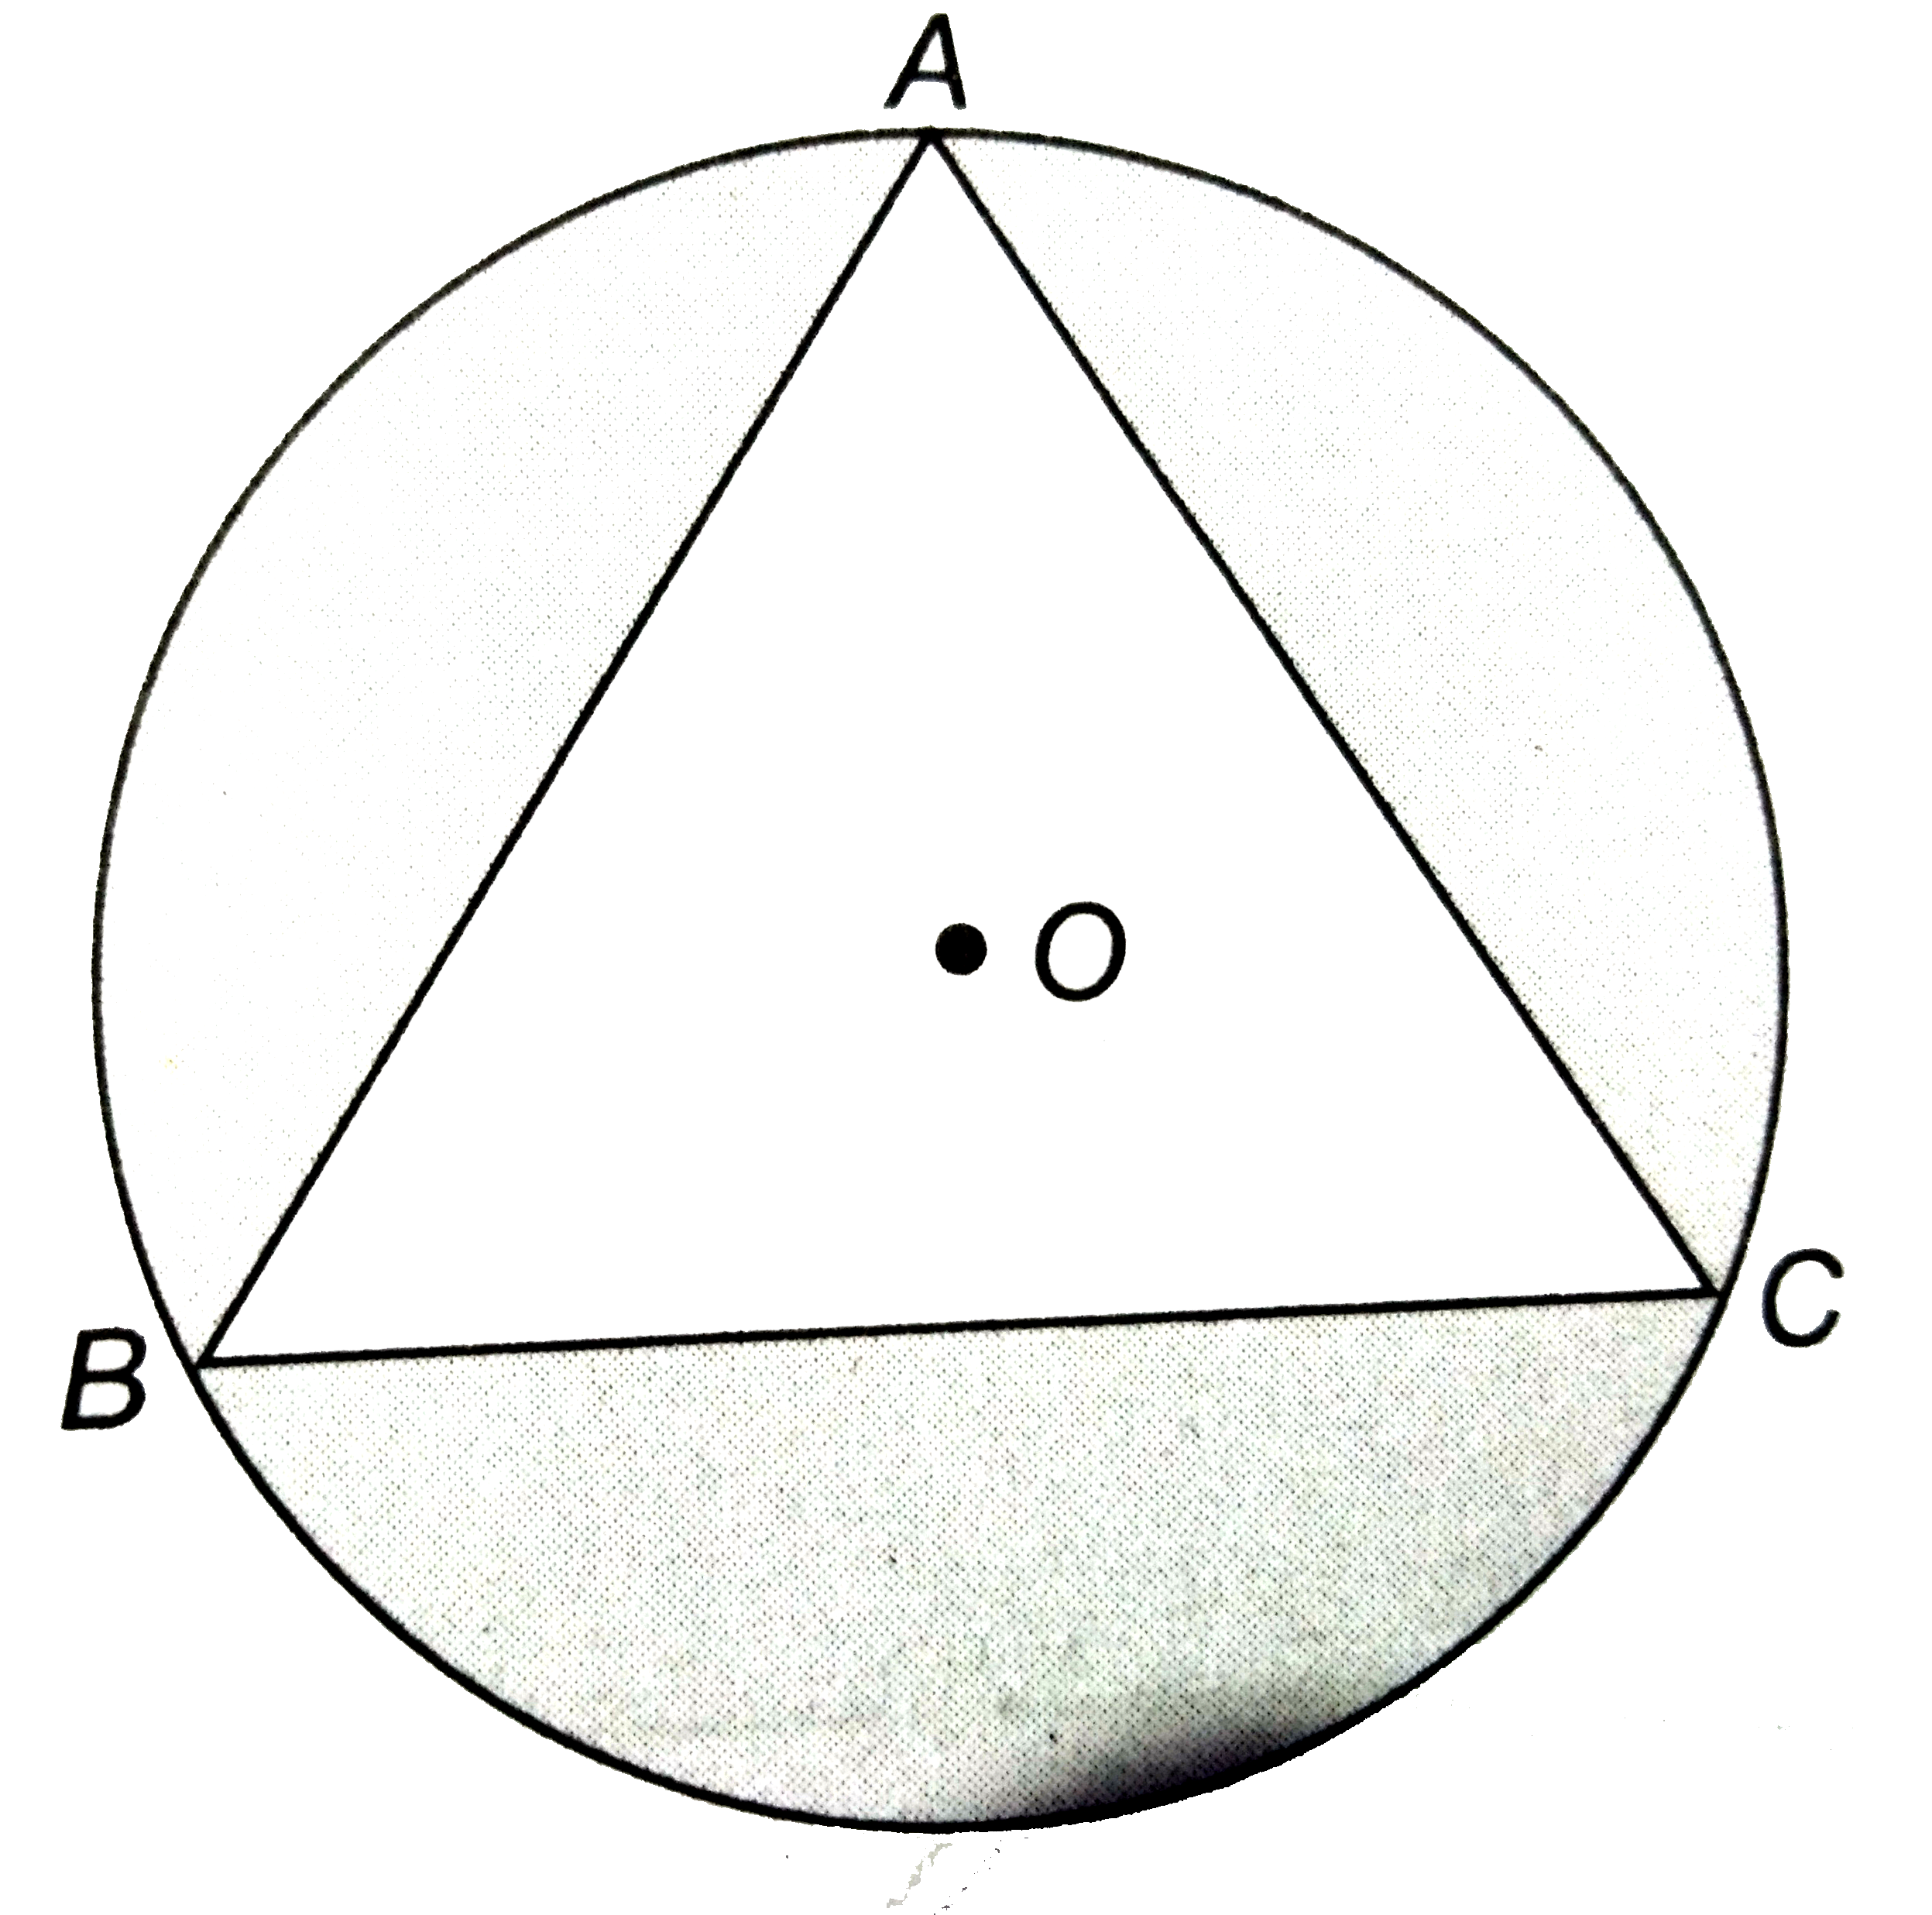 एक लड़की  42  सेमी त्रिज्या के वृत्त में समबाहु  त्रिभुज  ABC  को छोड़कर  चित्र के अनुसार  डिजाइन   बनाती है । डिजाइन  वाले  भाग  का क्षेत्रफल  ज्ञात कीजिए ।   (sqrt3 = 1.73 और   pi = 22/7का प्रयोग करें )